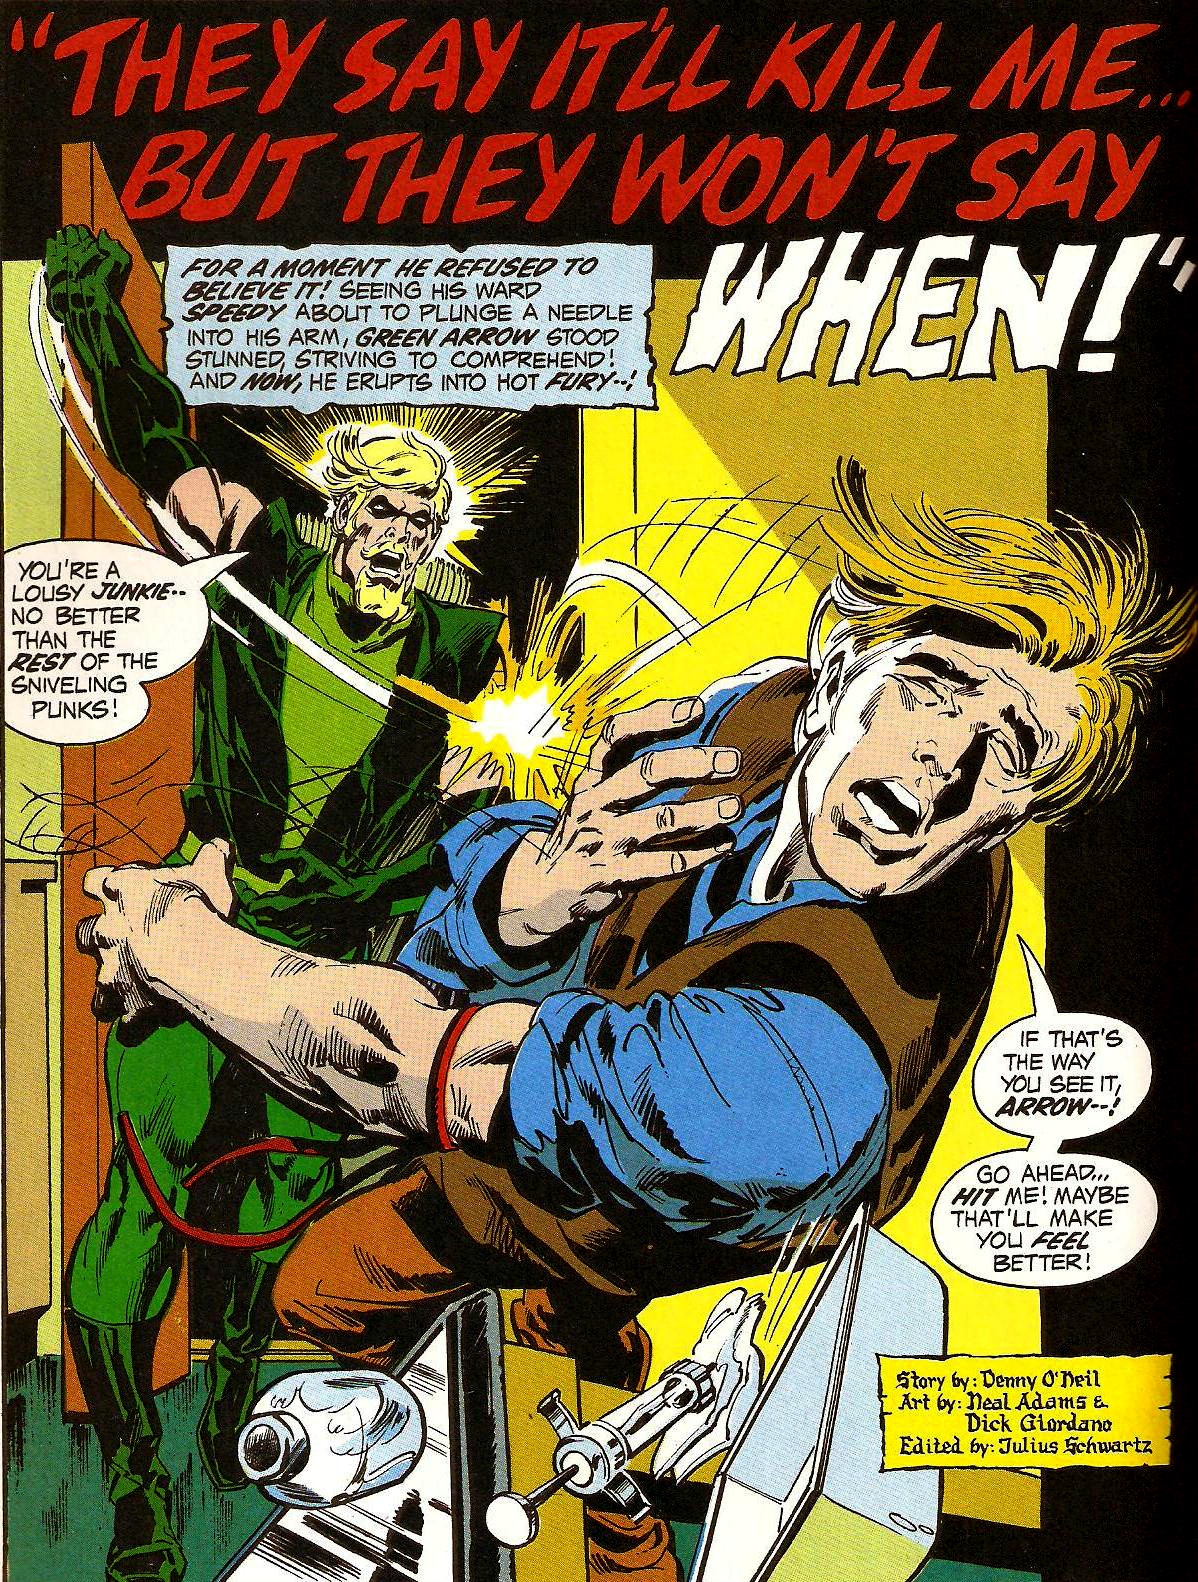 From Green Lantern (Vol. 2) #86 (1971)